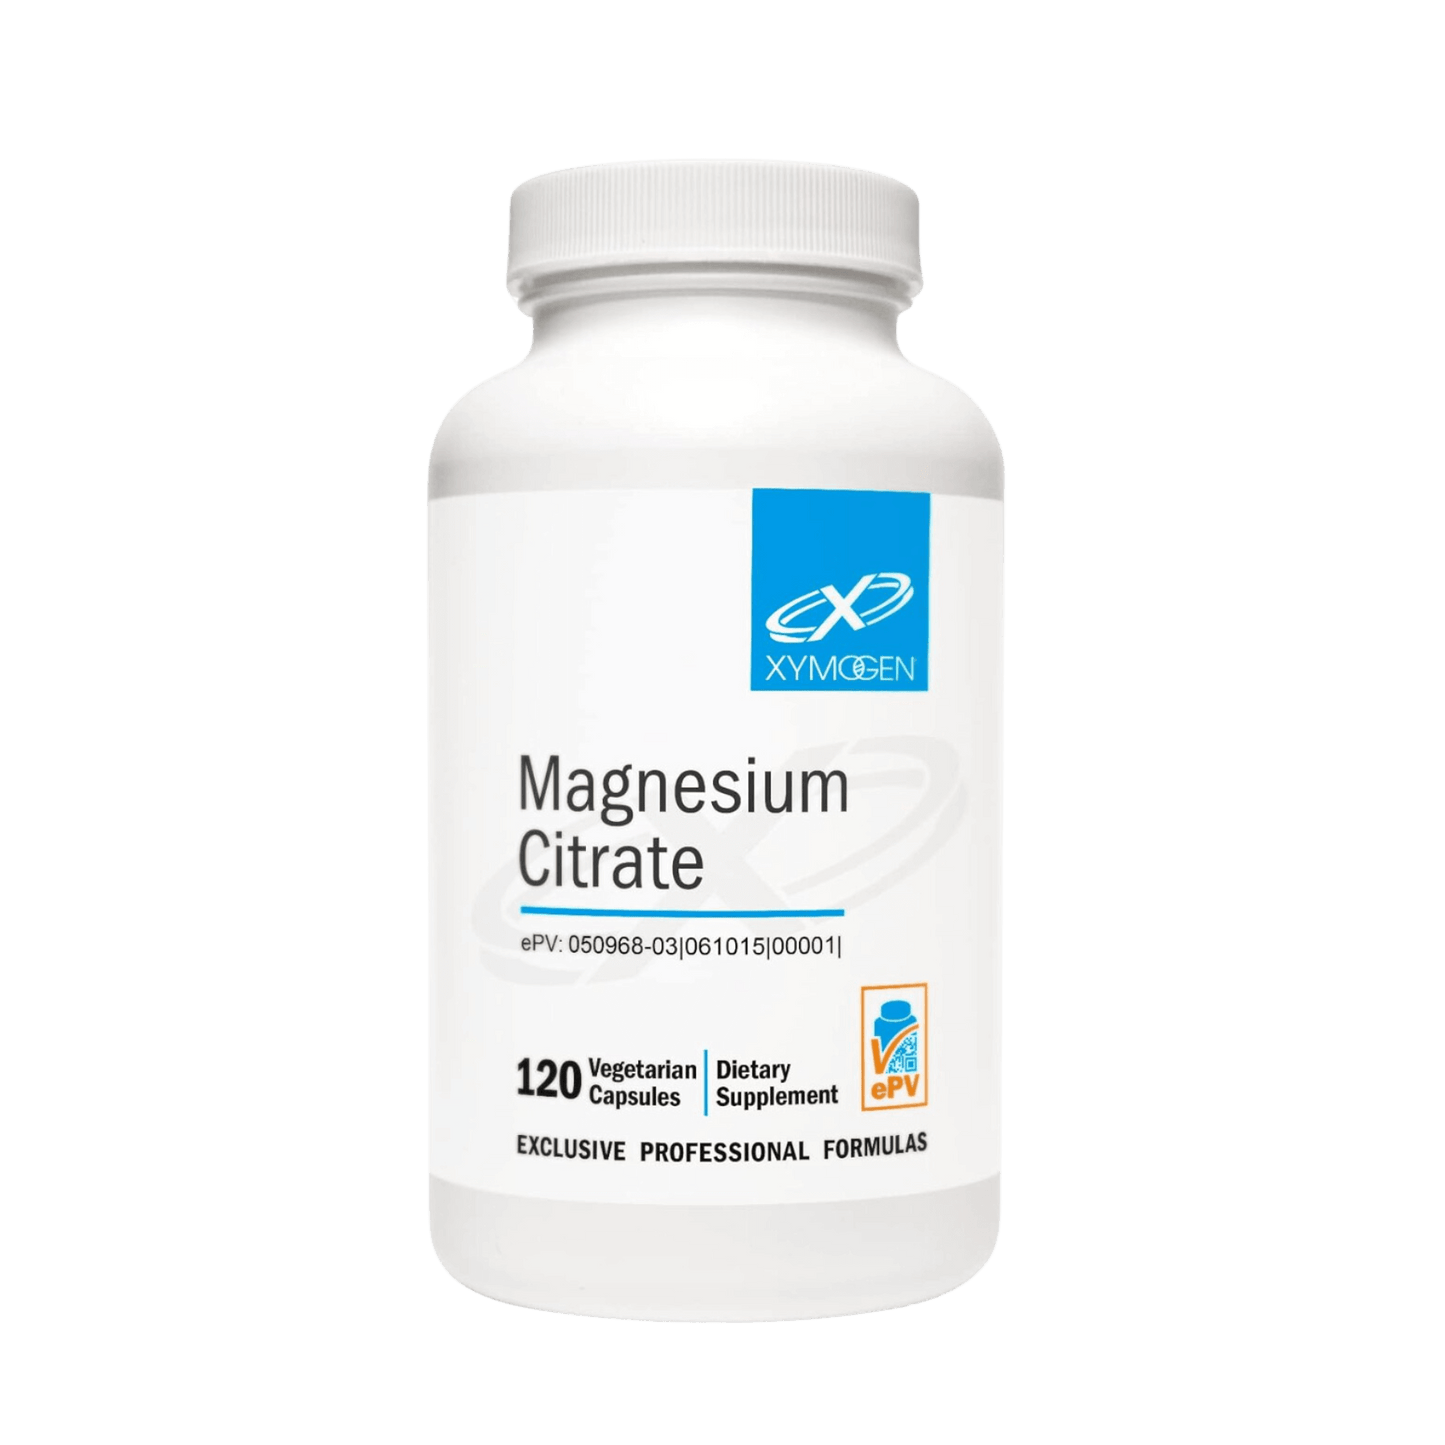 Xymogen Magnesium Citrate Capsules